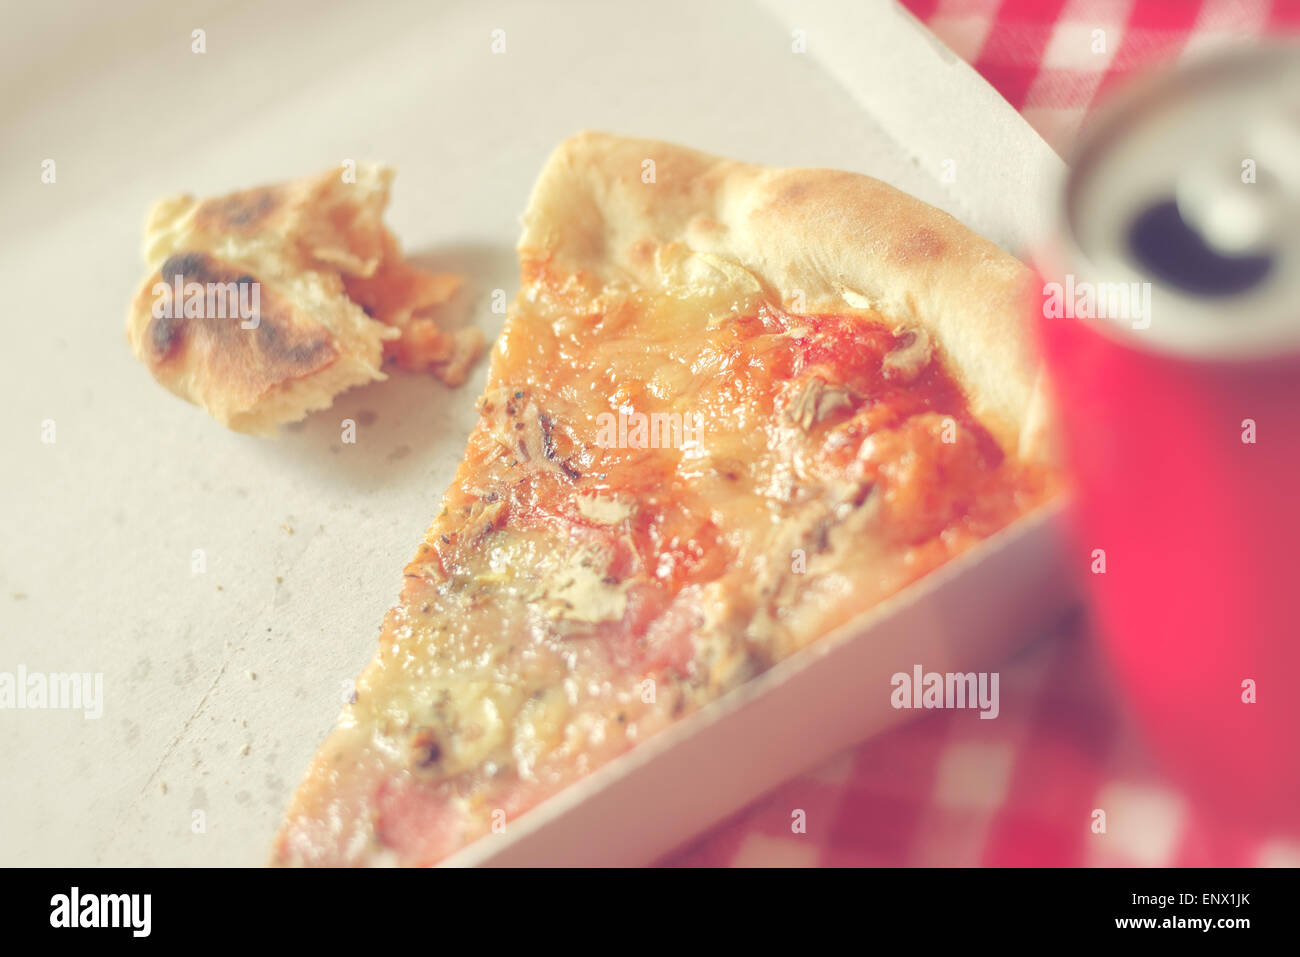 Pizzastück und Fastfood-Reste im Karton am Küchentisch, Retro-Stil getönten Bild Stockfoto